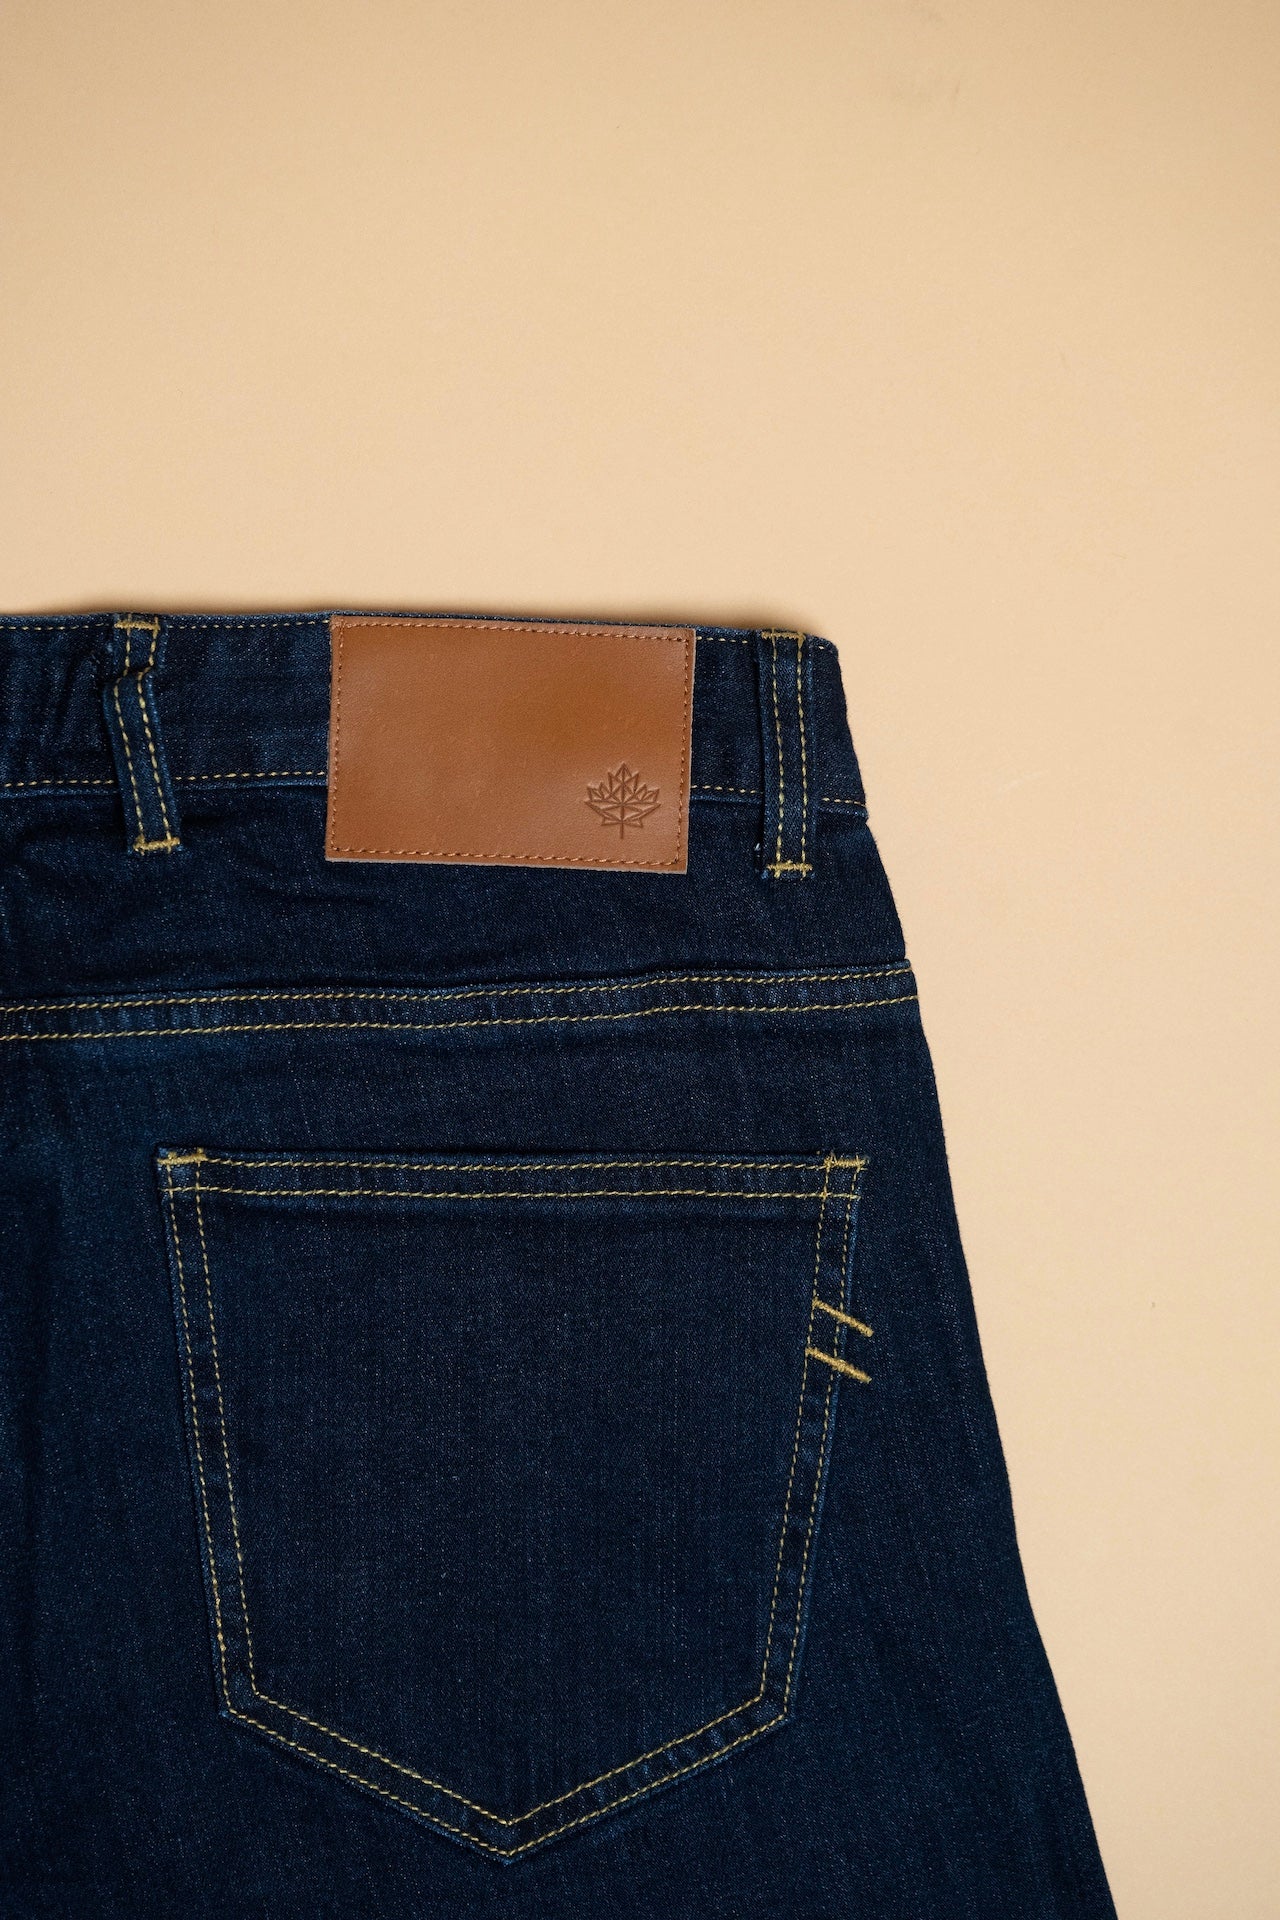 Workwear jean in classic indigo – Cloth & Crown